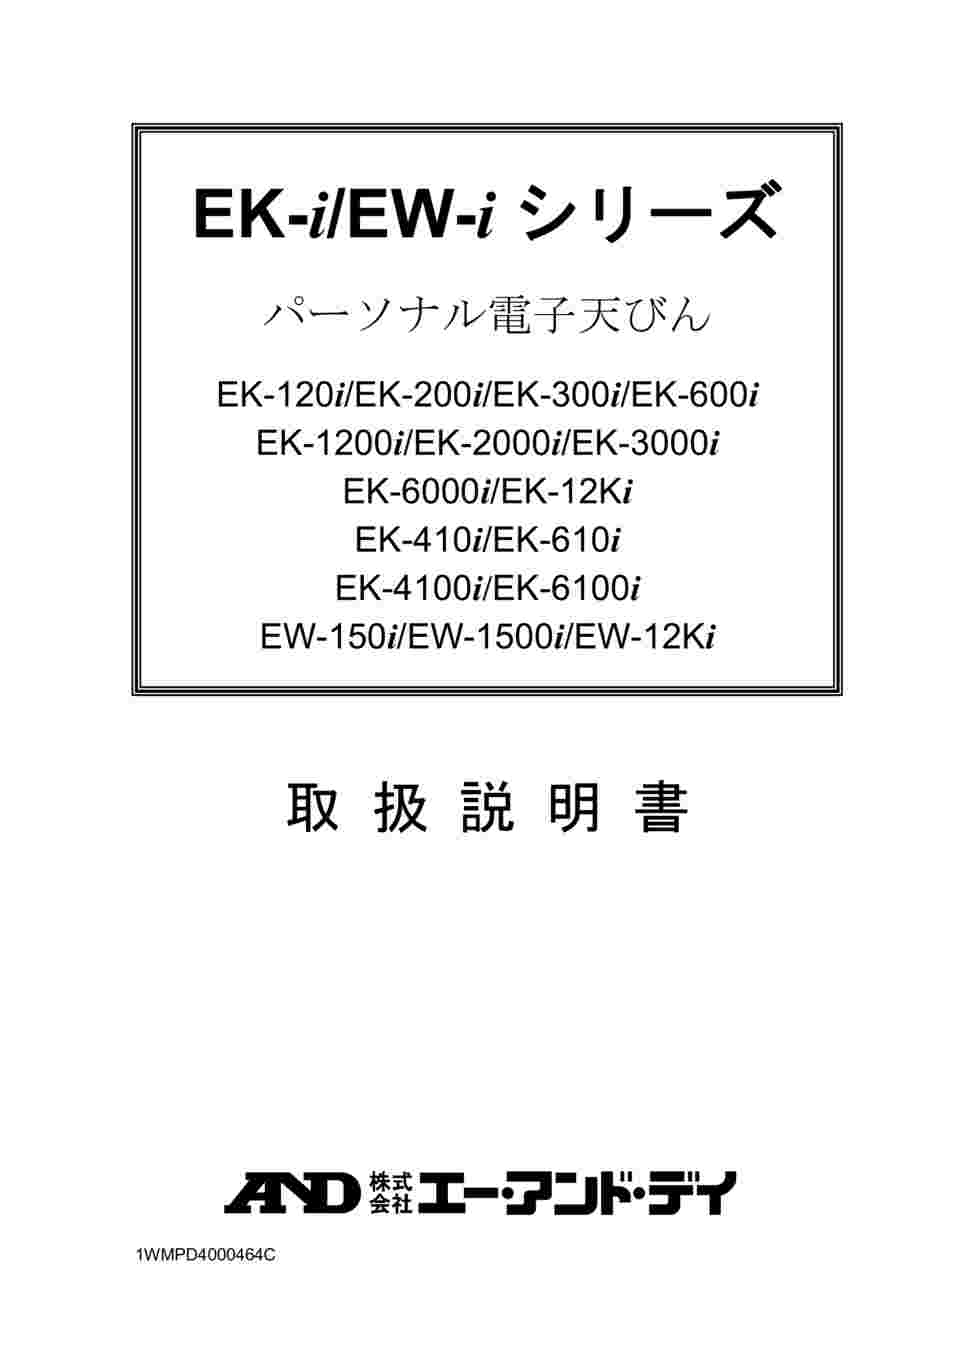 64-4052-21 コンパクト電子天びん トリプルレンジ EW-iシリーズ ひょう